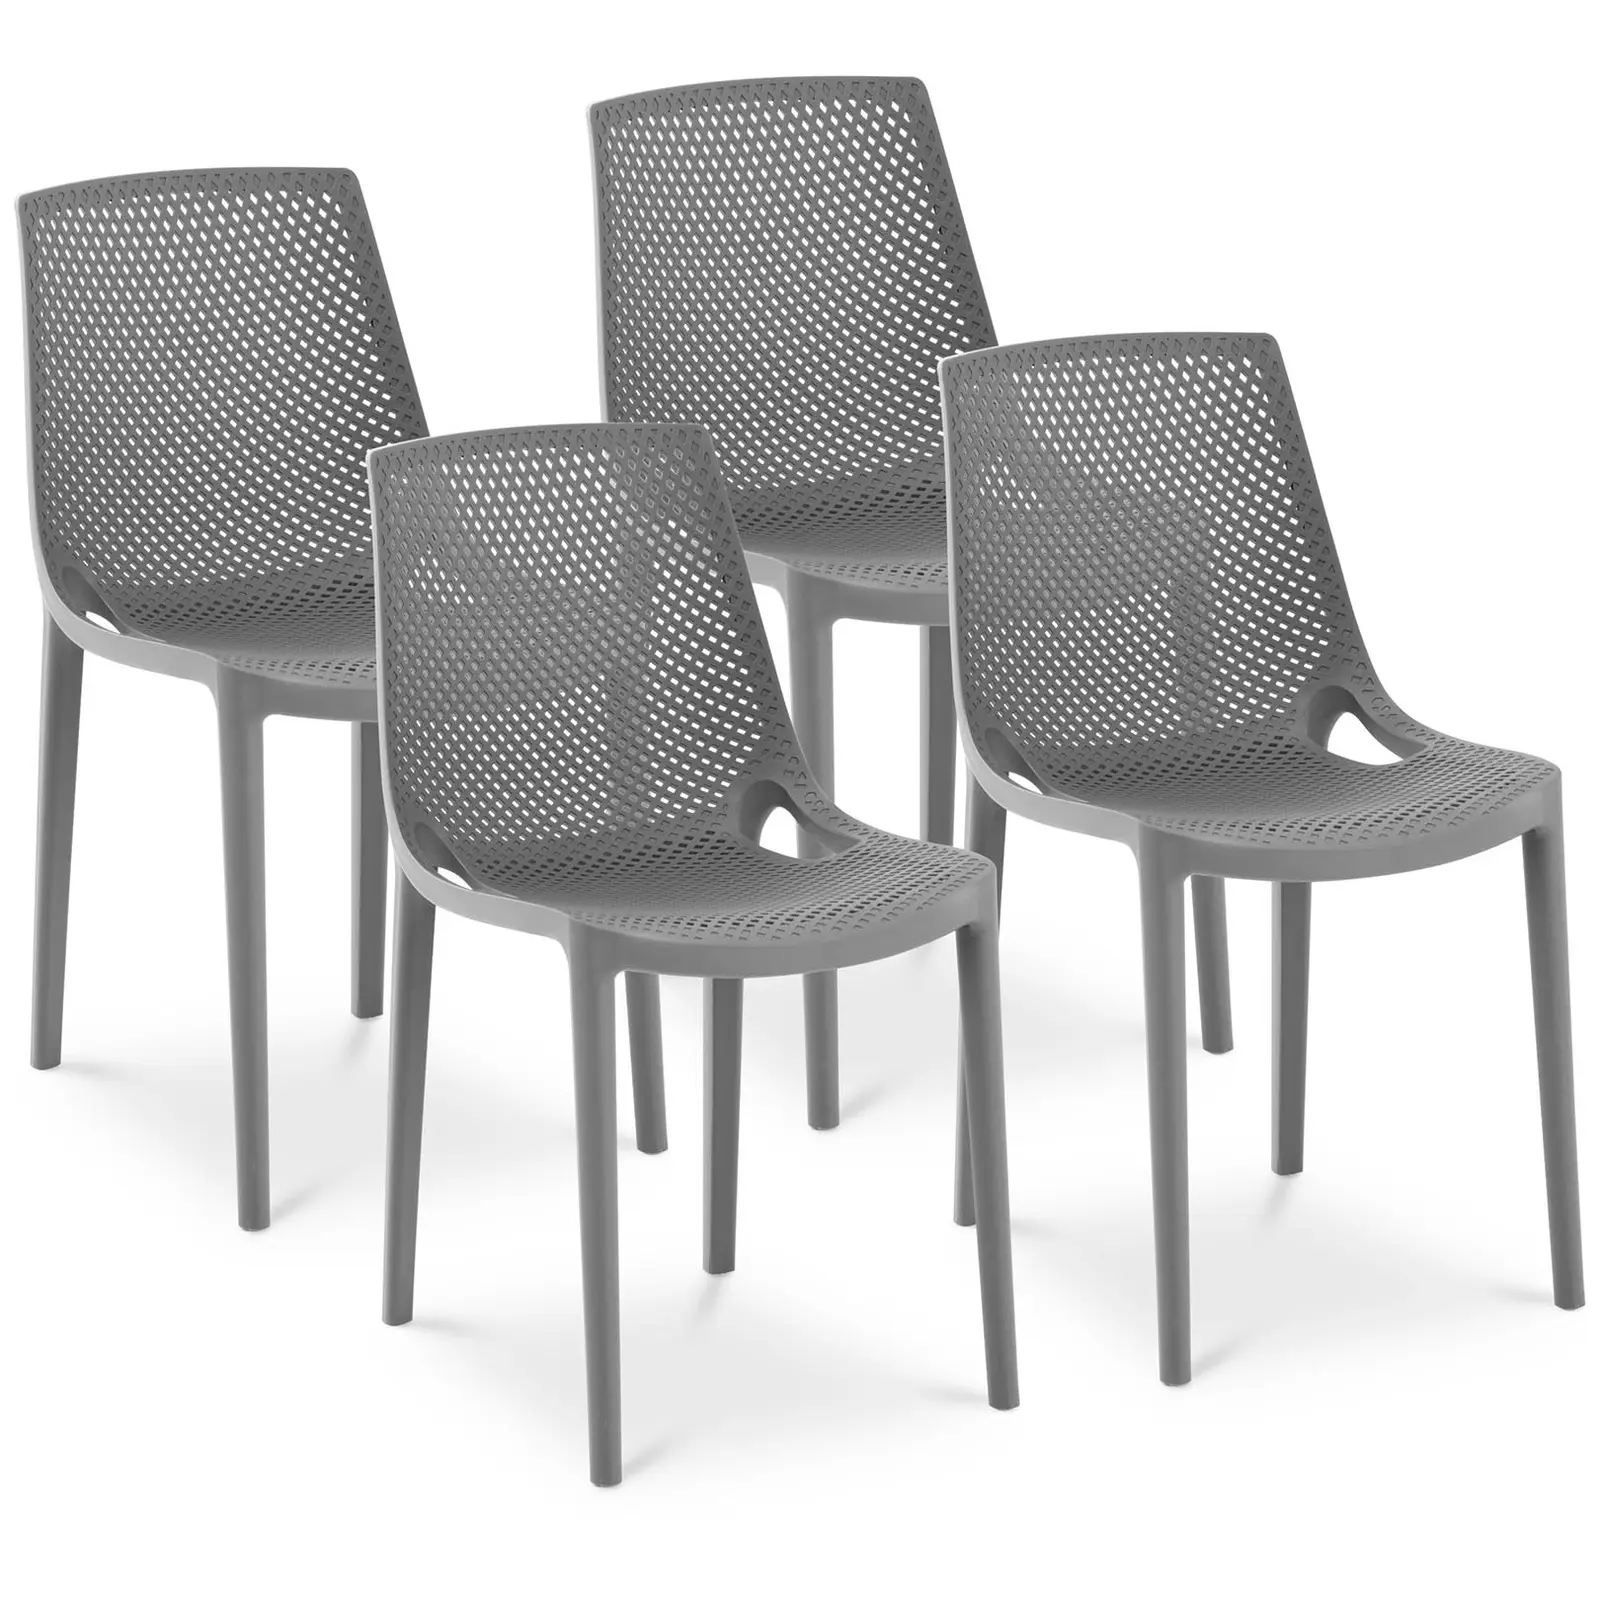 scaun - set de 4 - Royal Catering - până la {{capacitate_de_încărcare_max_72_temp}} kg - spătar împletit - gri